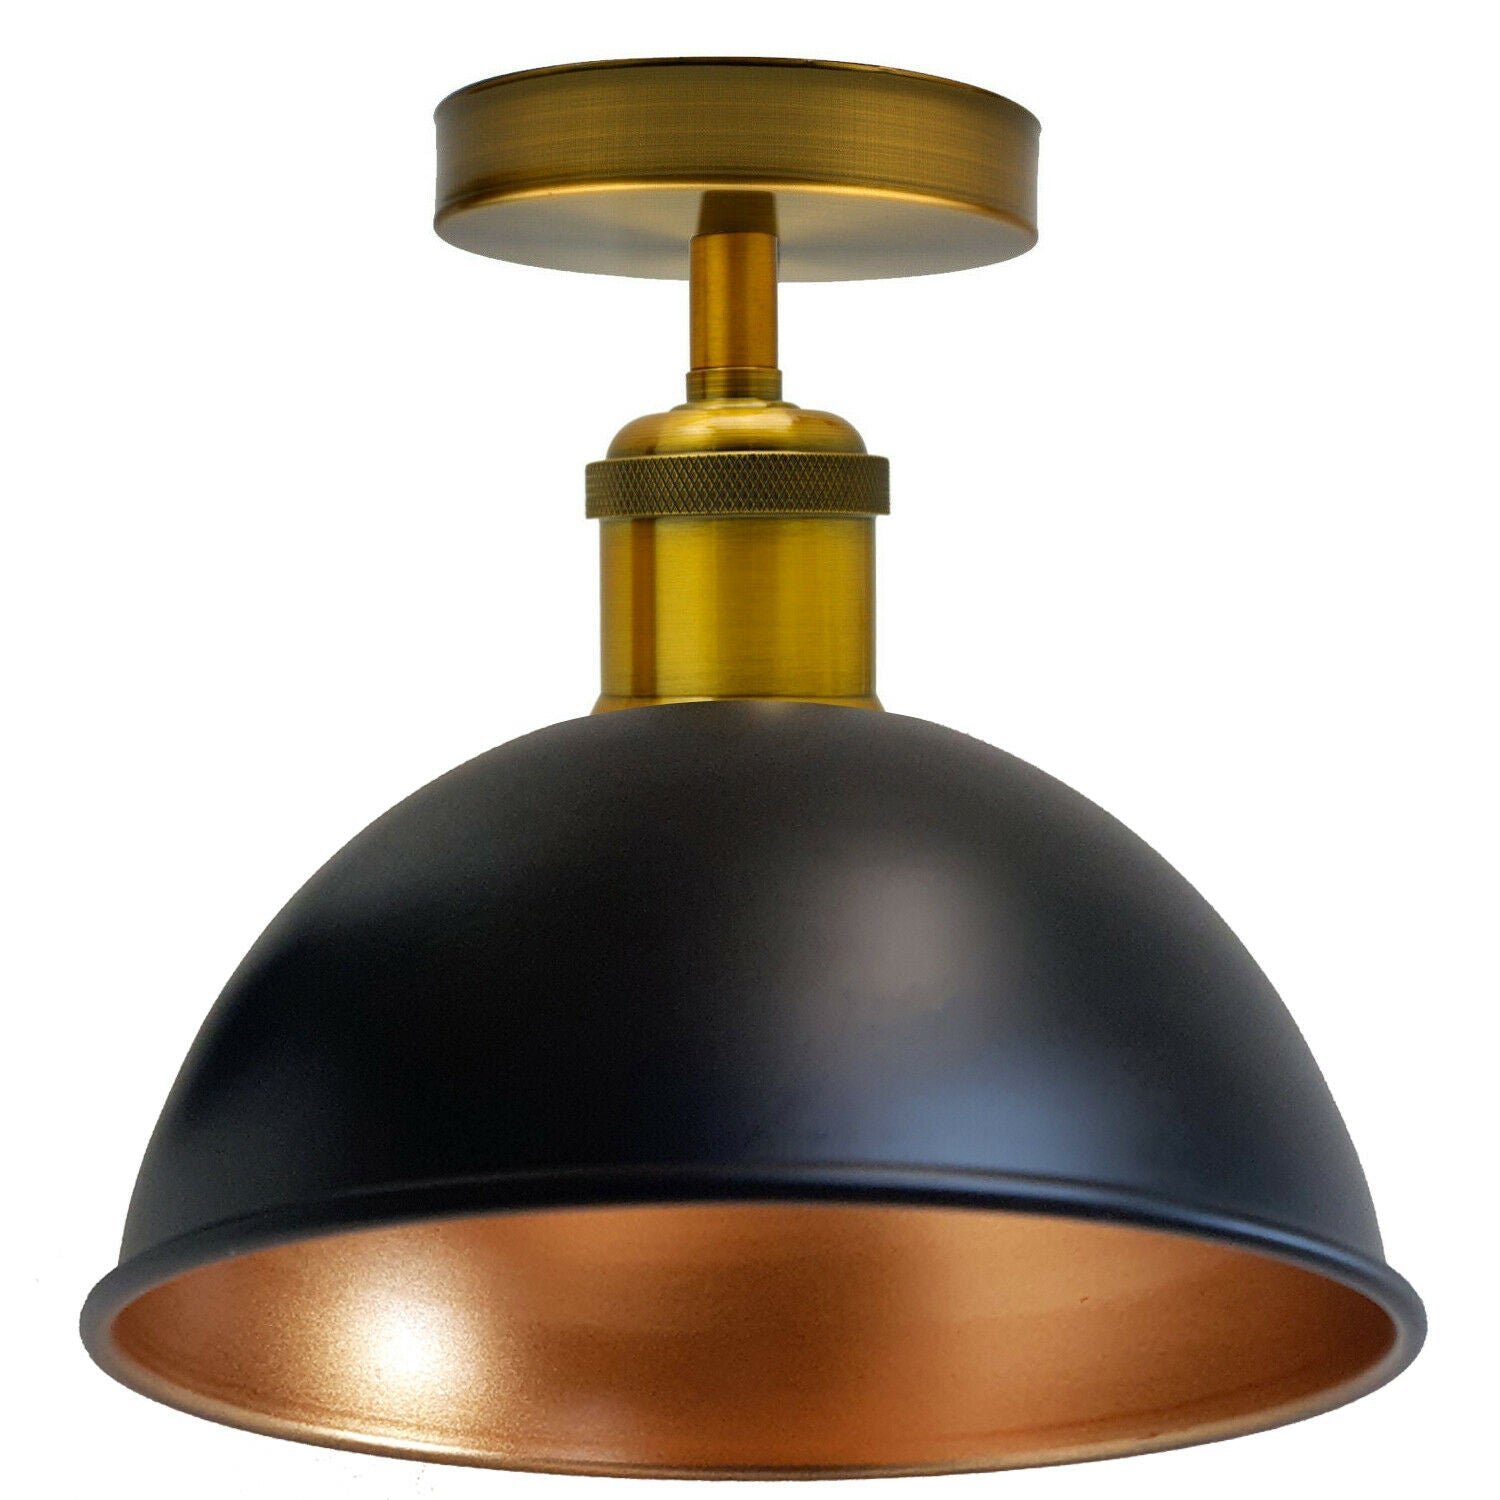 Sort Guld Indvendig Vintage Retro Flush Mount Loftslampe Rustik Farve Metal Lampeskærm